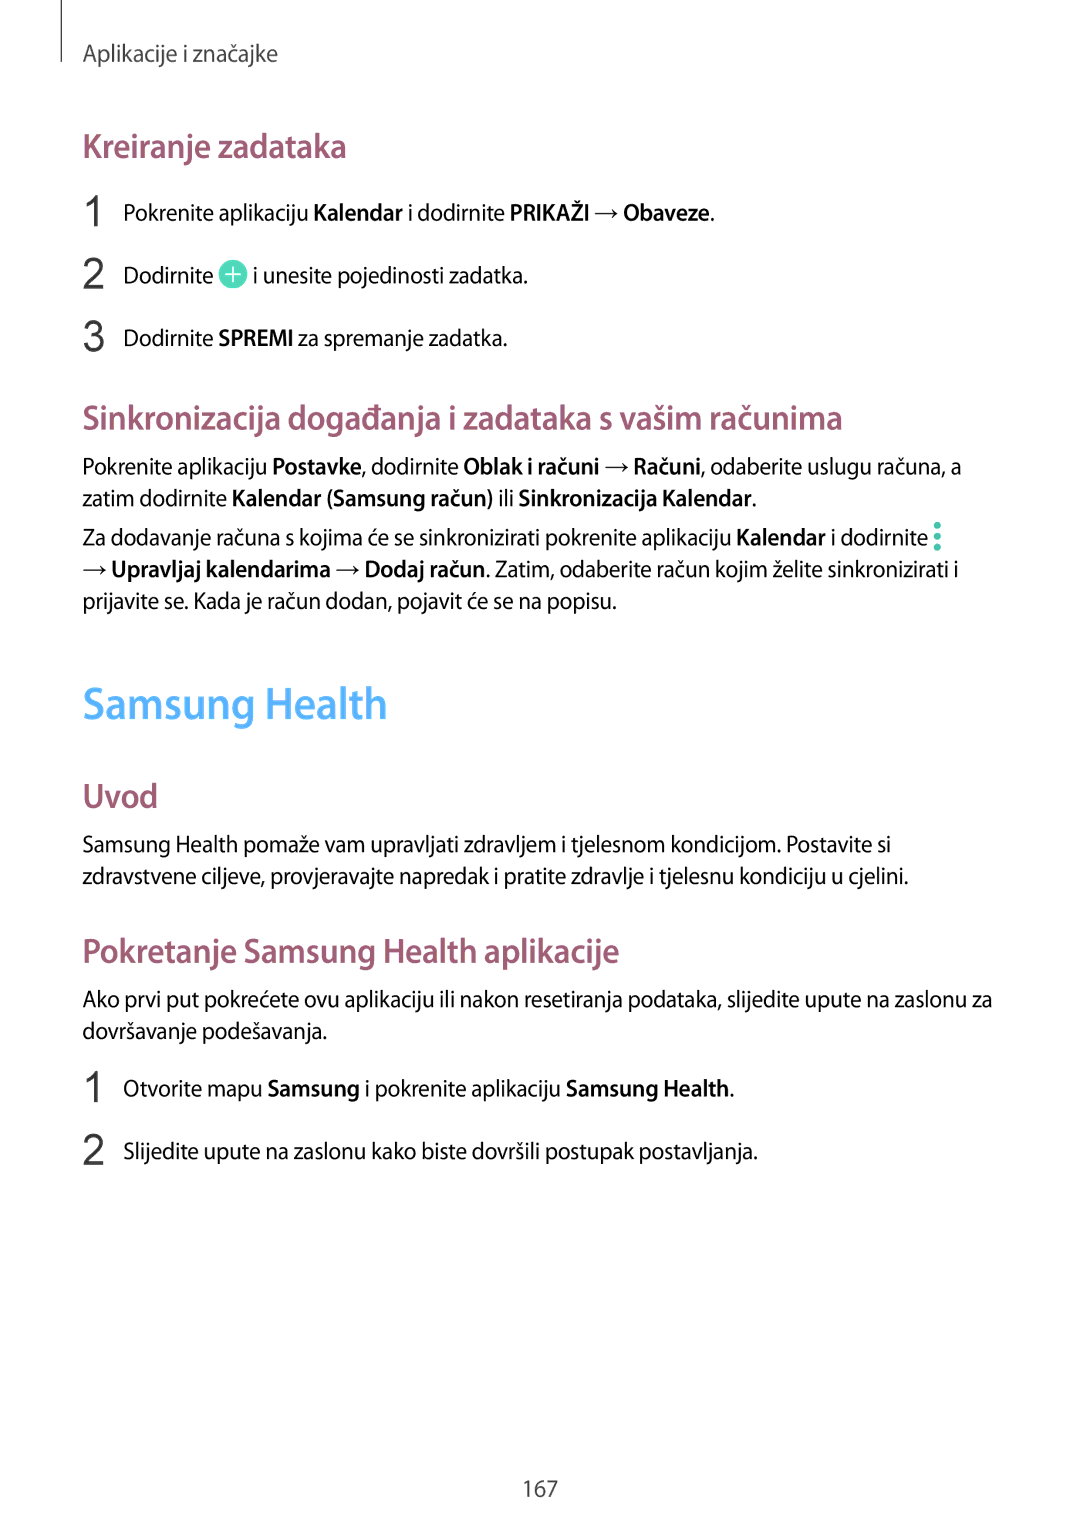 Samsung SM-N950FZKASEE manual Samsung Health, Kreiranje zadataka, Sinkronizacija događanja i zadataka s vašim računima 